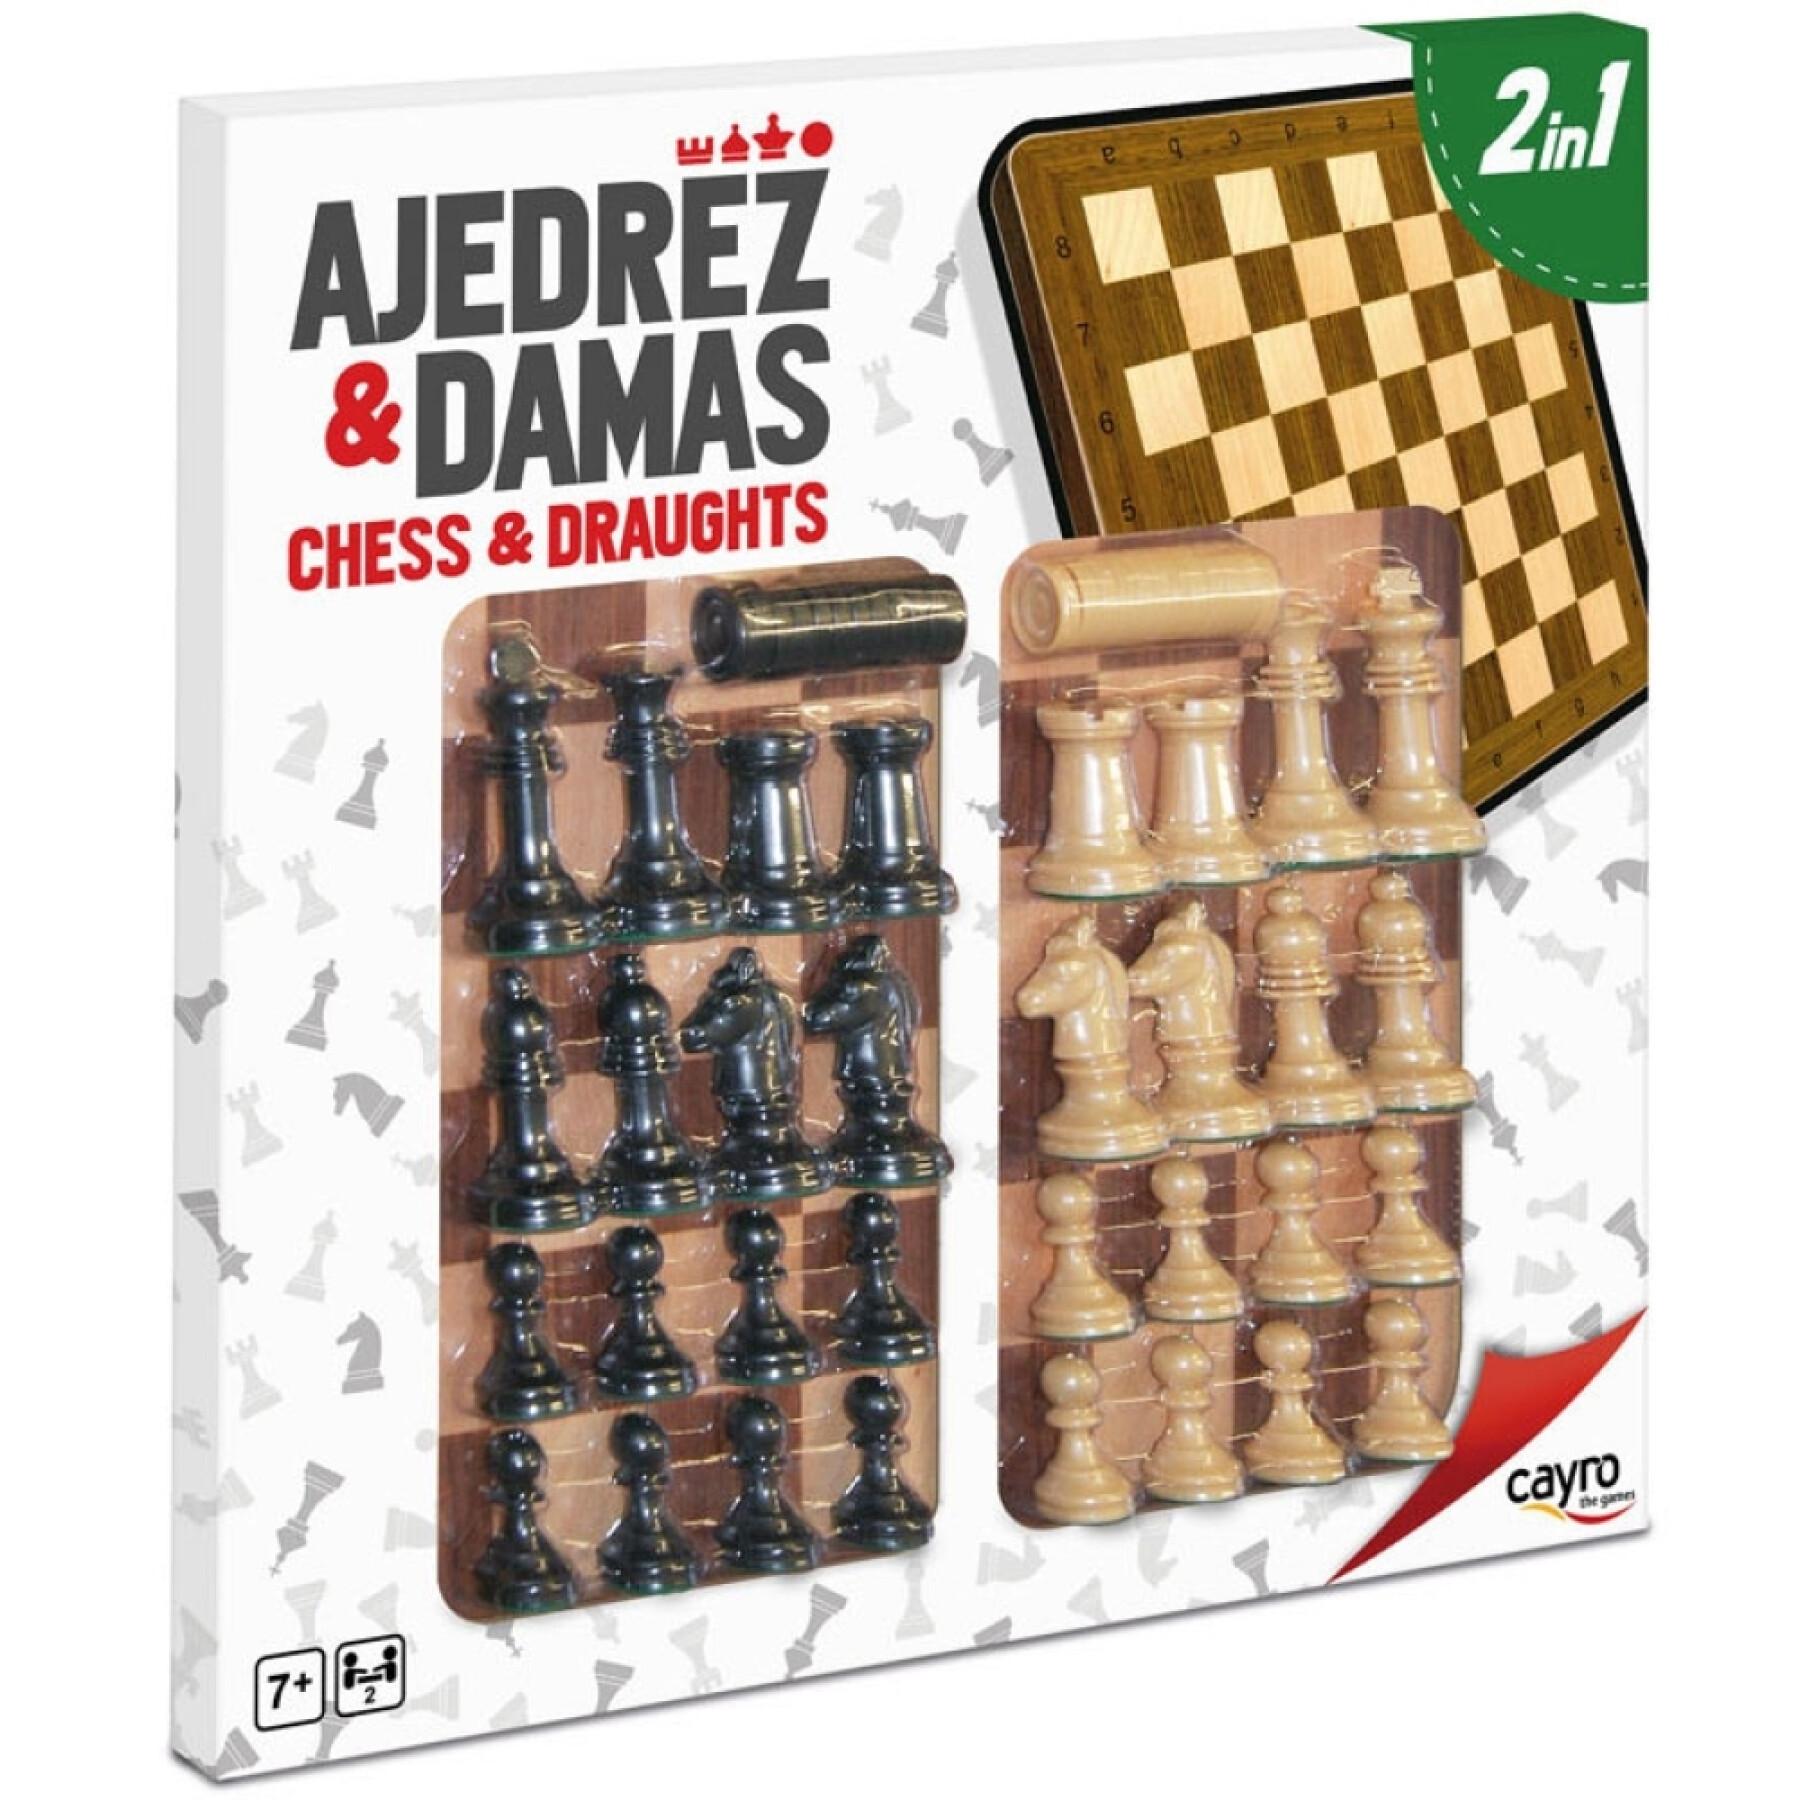 Conjunto completo de xadrez de madeira e damas Cayro